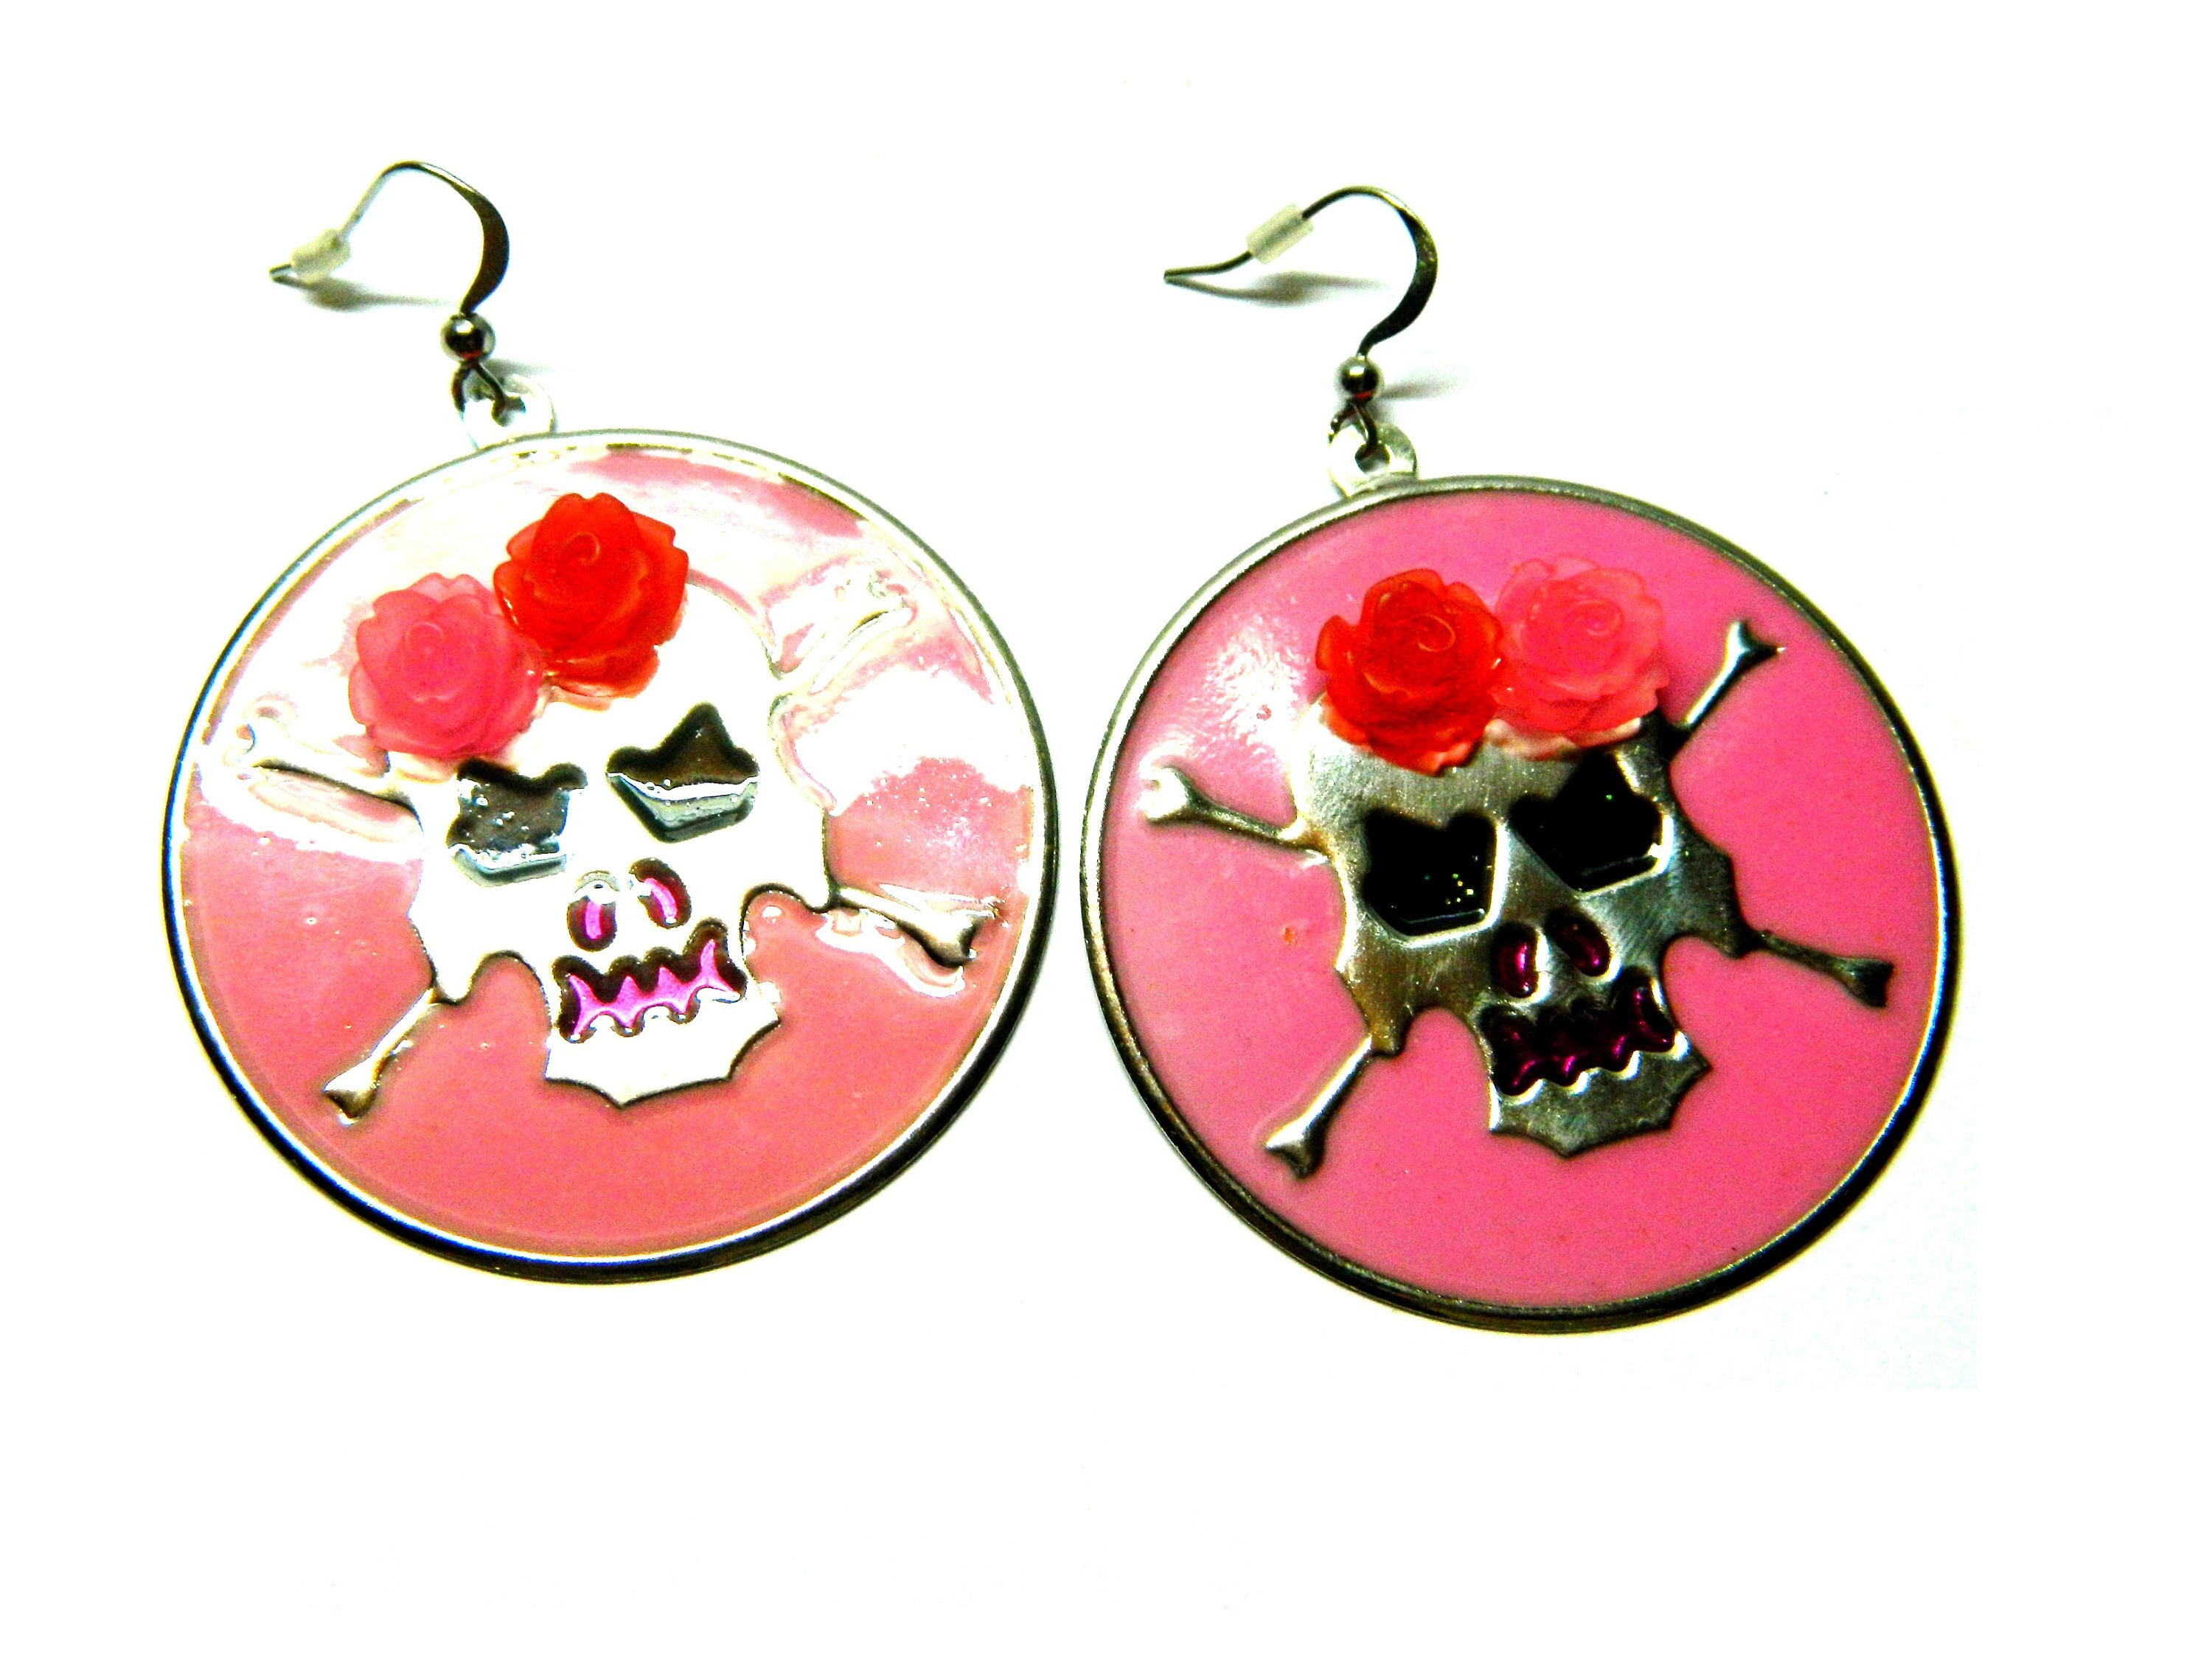 Sugar skull Halloween earrings pink & red roses crown silver | Etsy